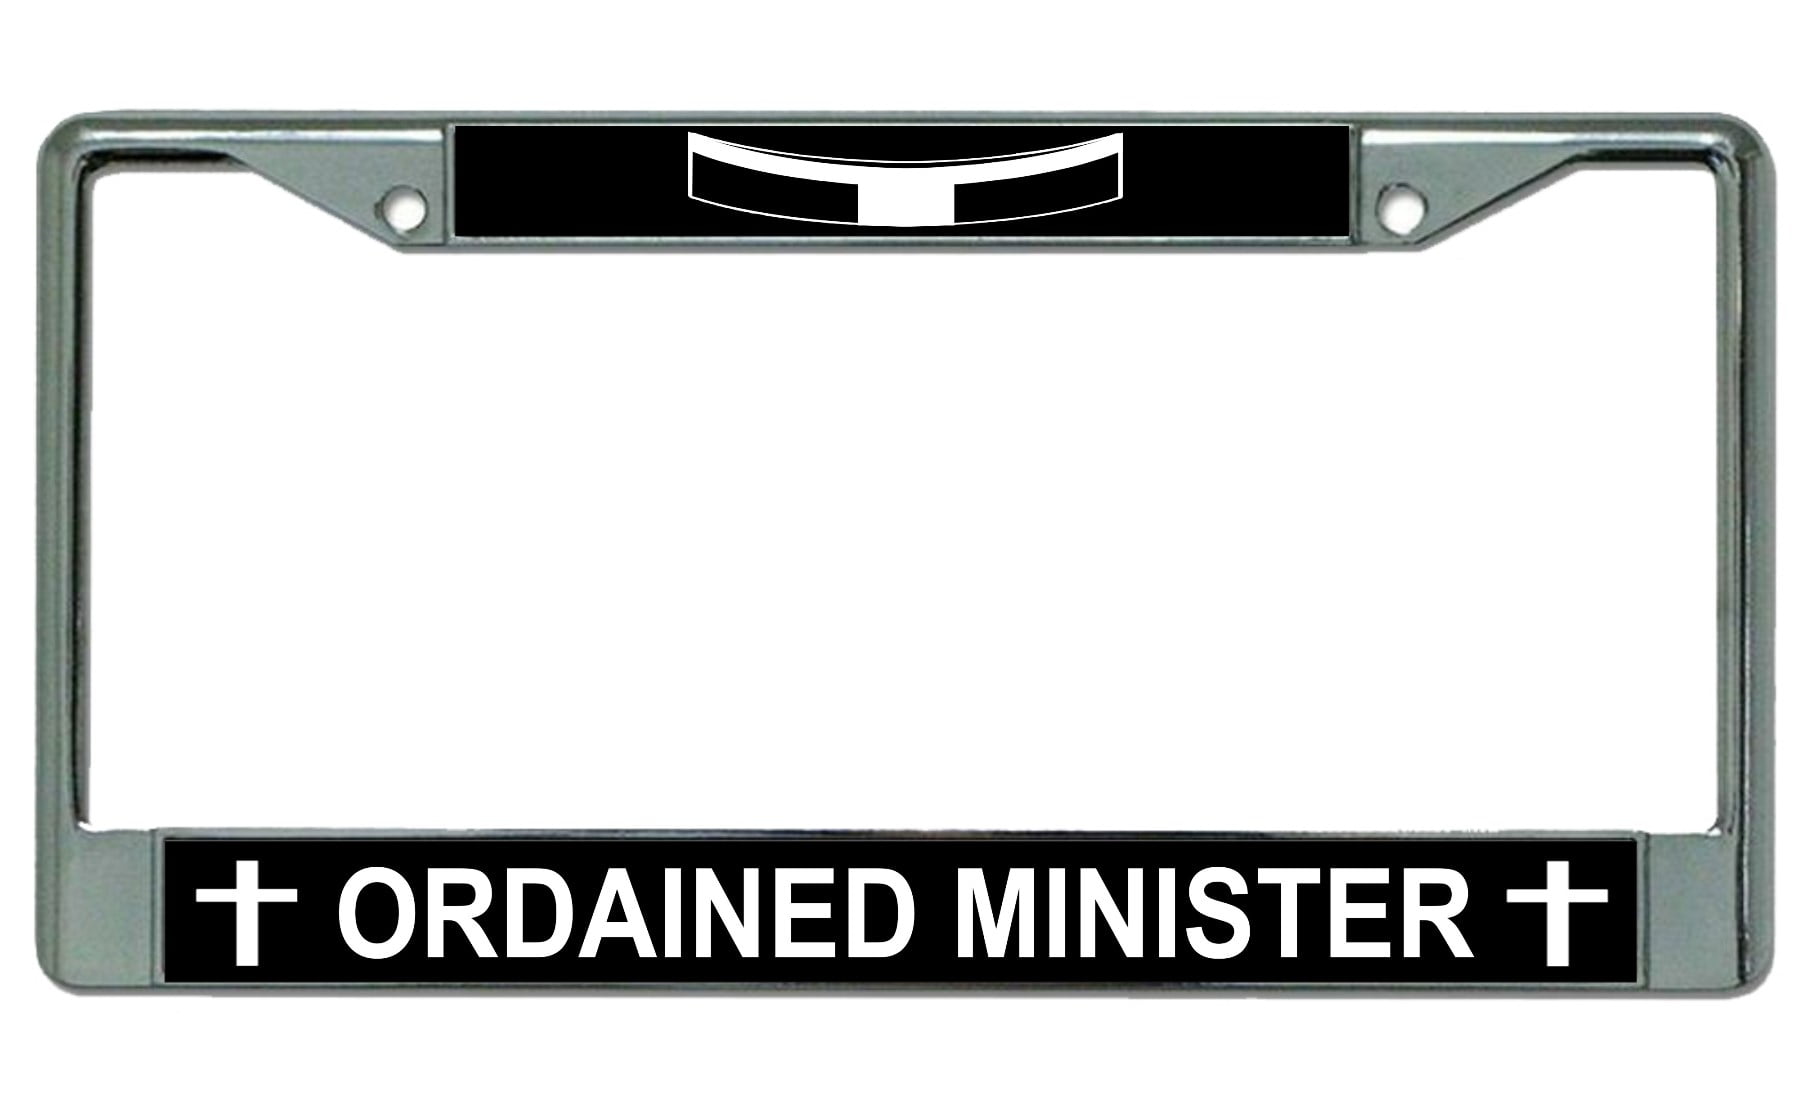 Ordained Minister Chrome License Plate Frame